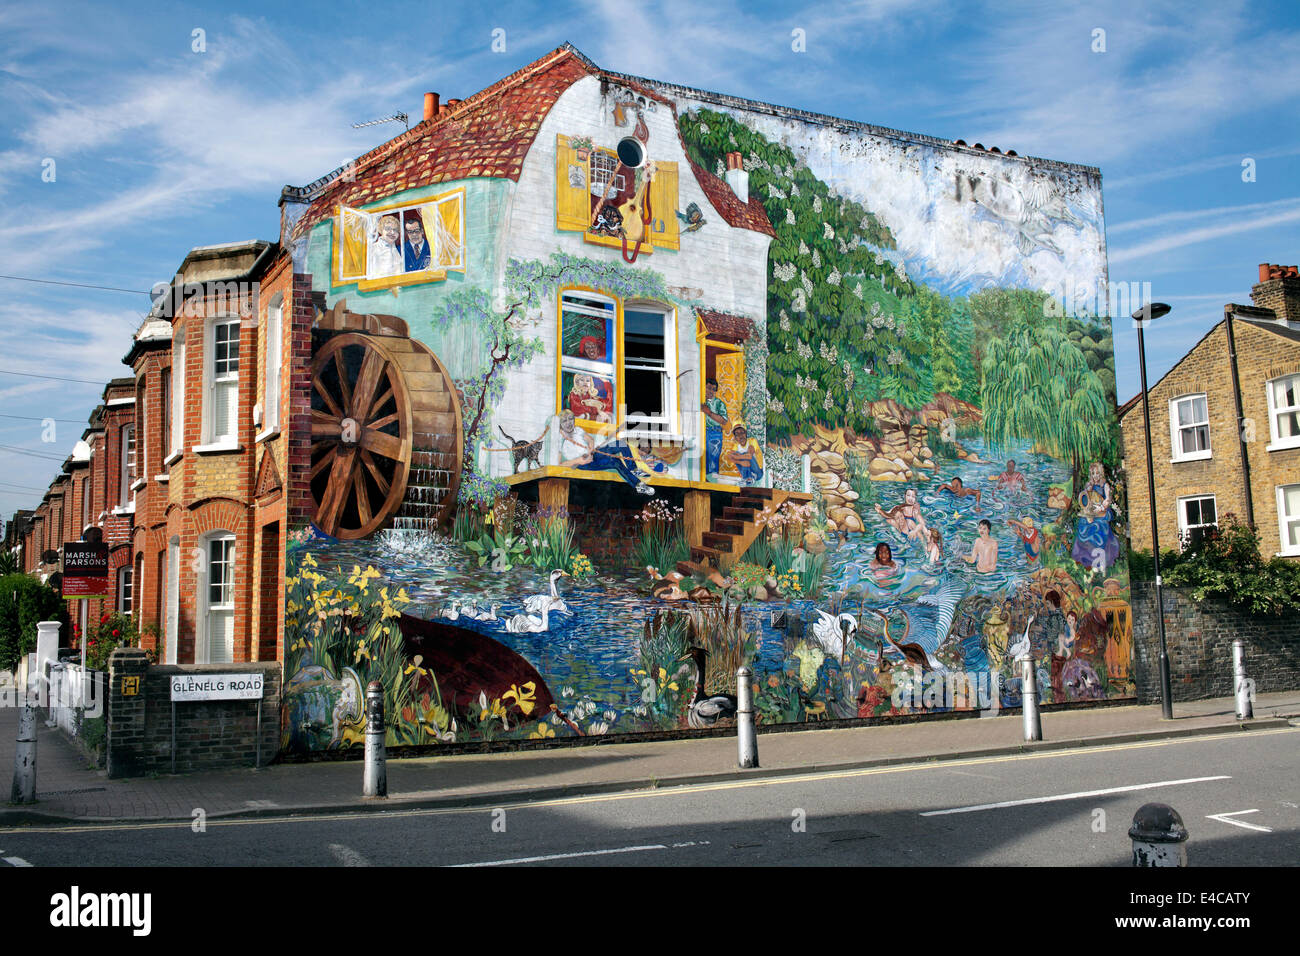 La mattina presto estate sole illumina il grande splash murale sulla parete di estremità di una casa a schiera, Brixton, Londra. Foto Stock